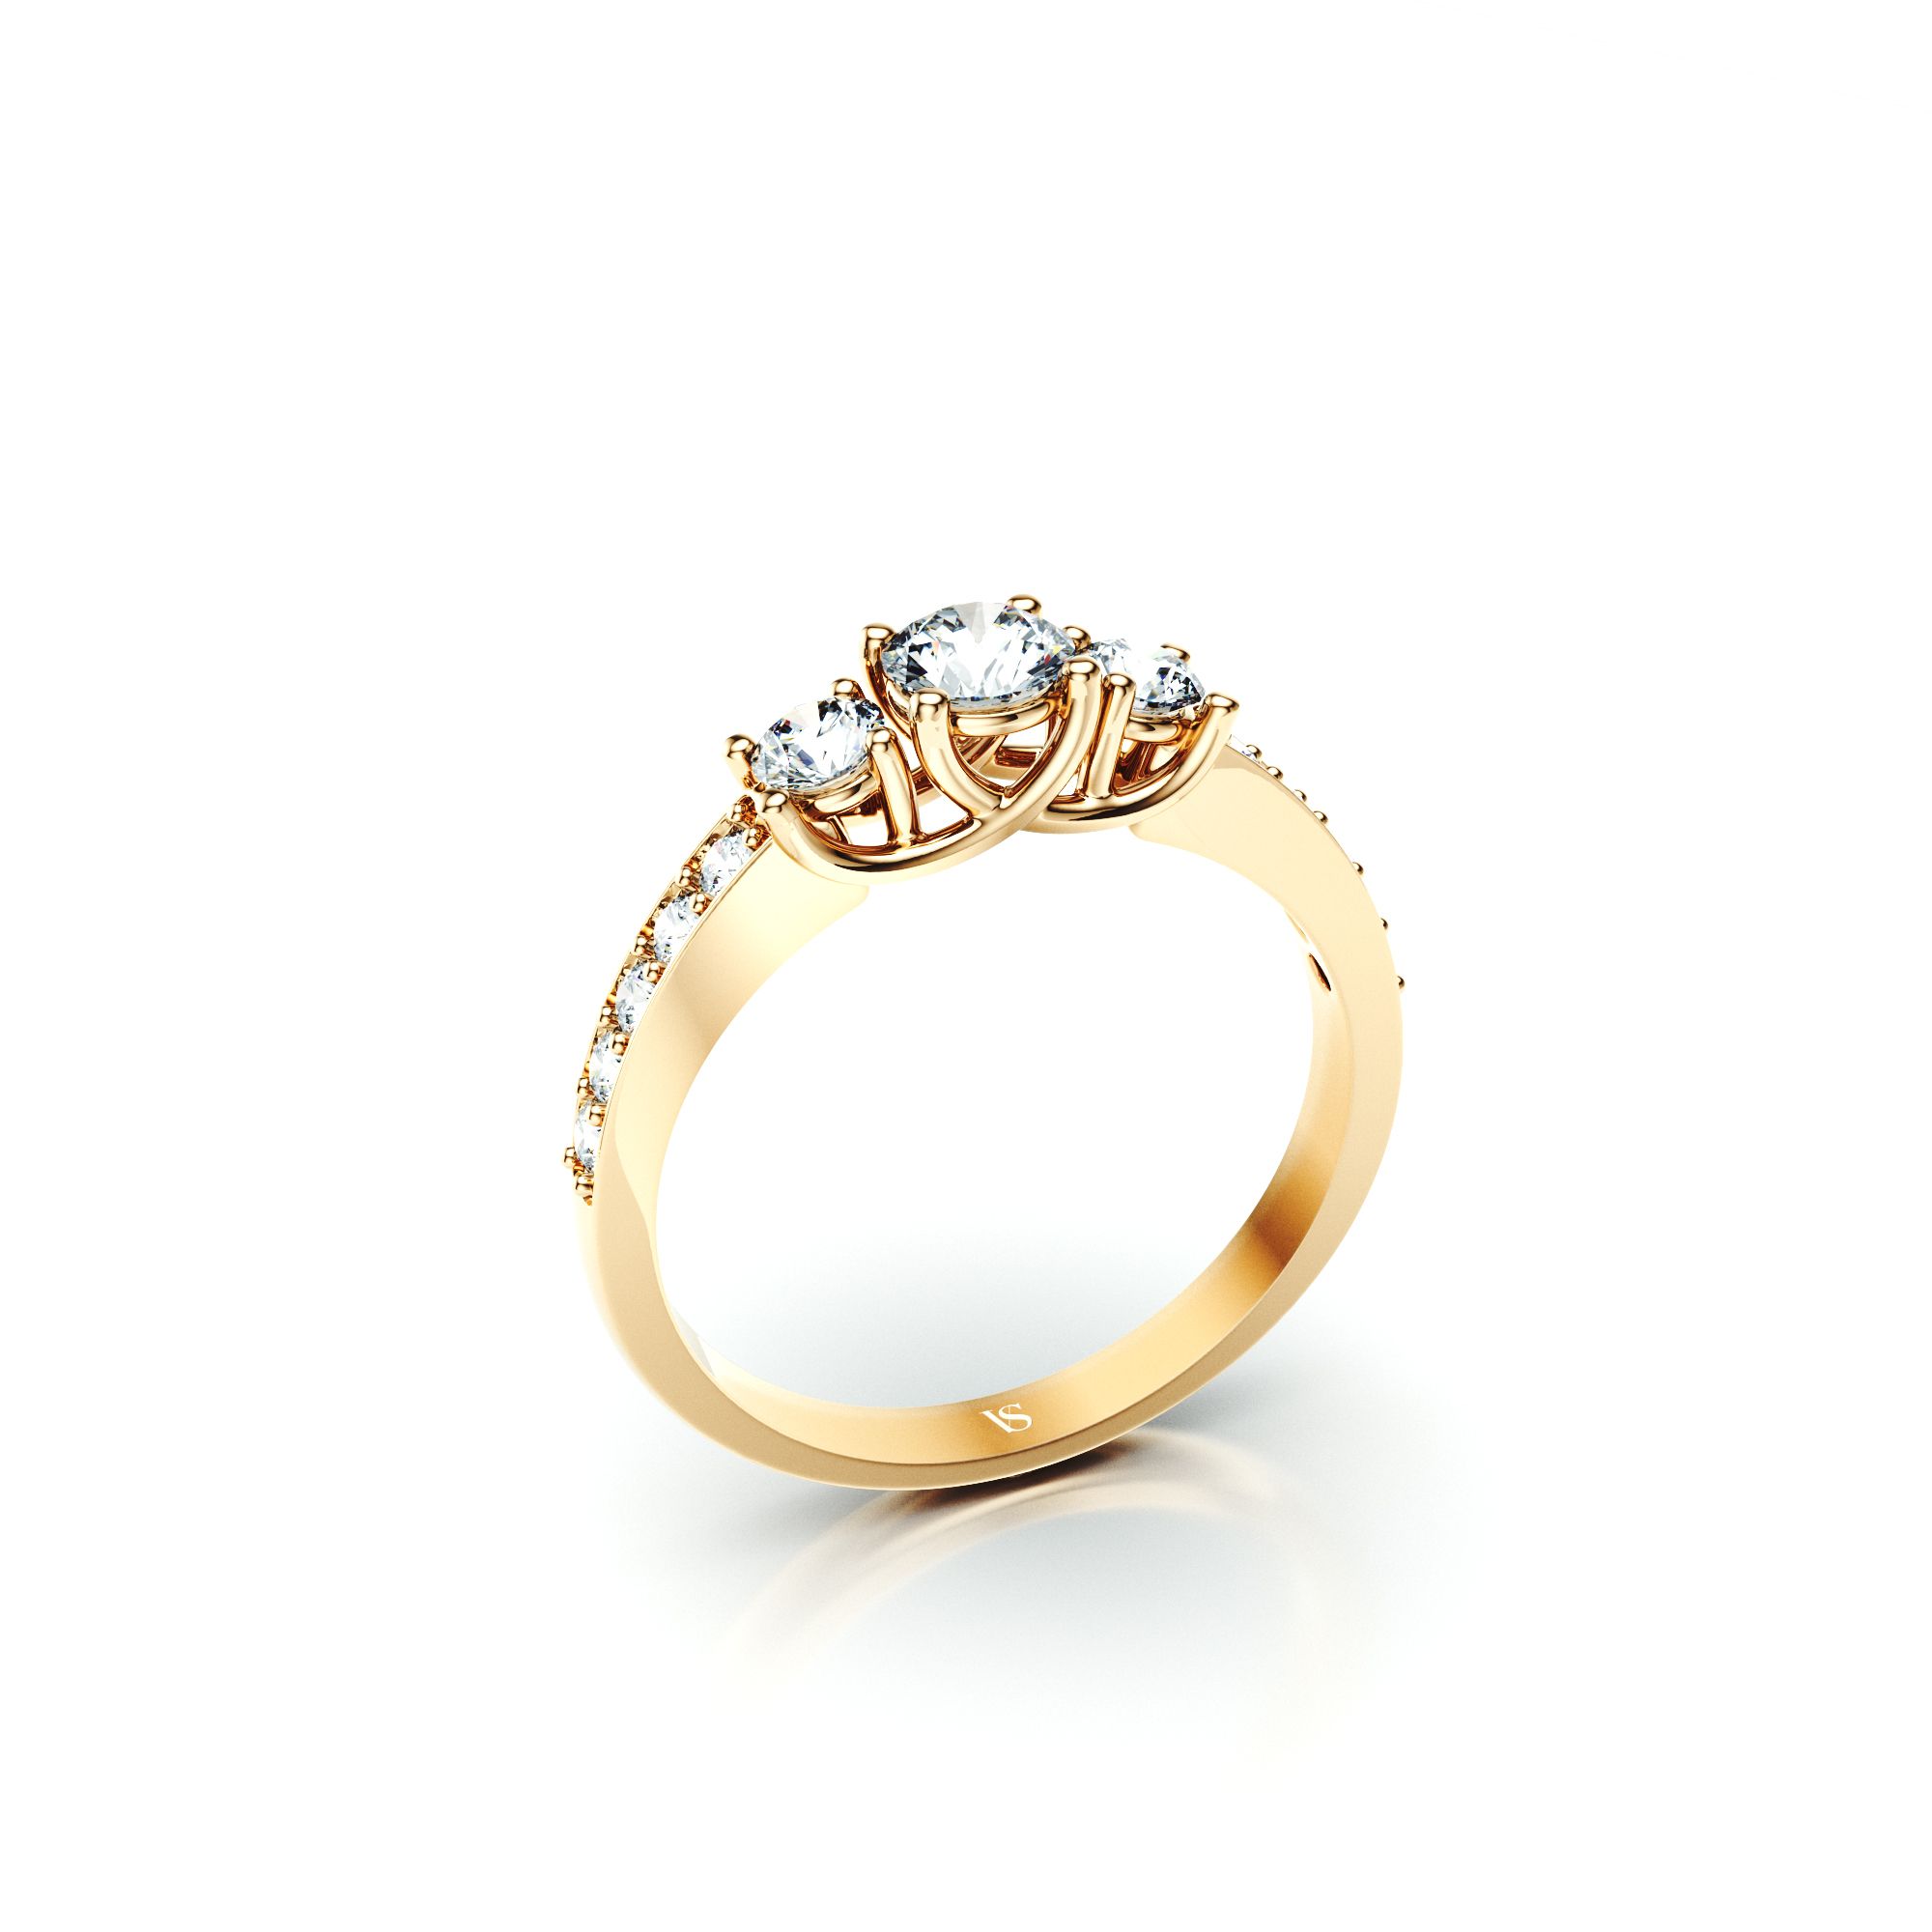 Zásnubní prsten VS031 – žluté zlato